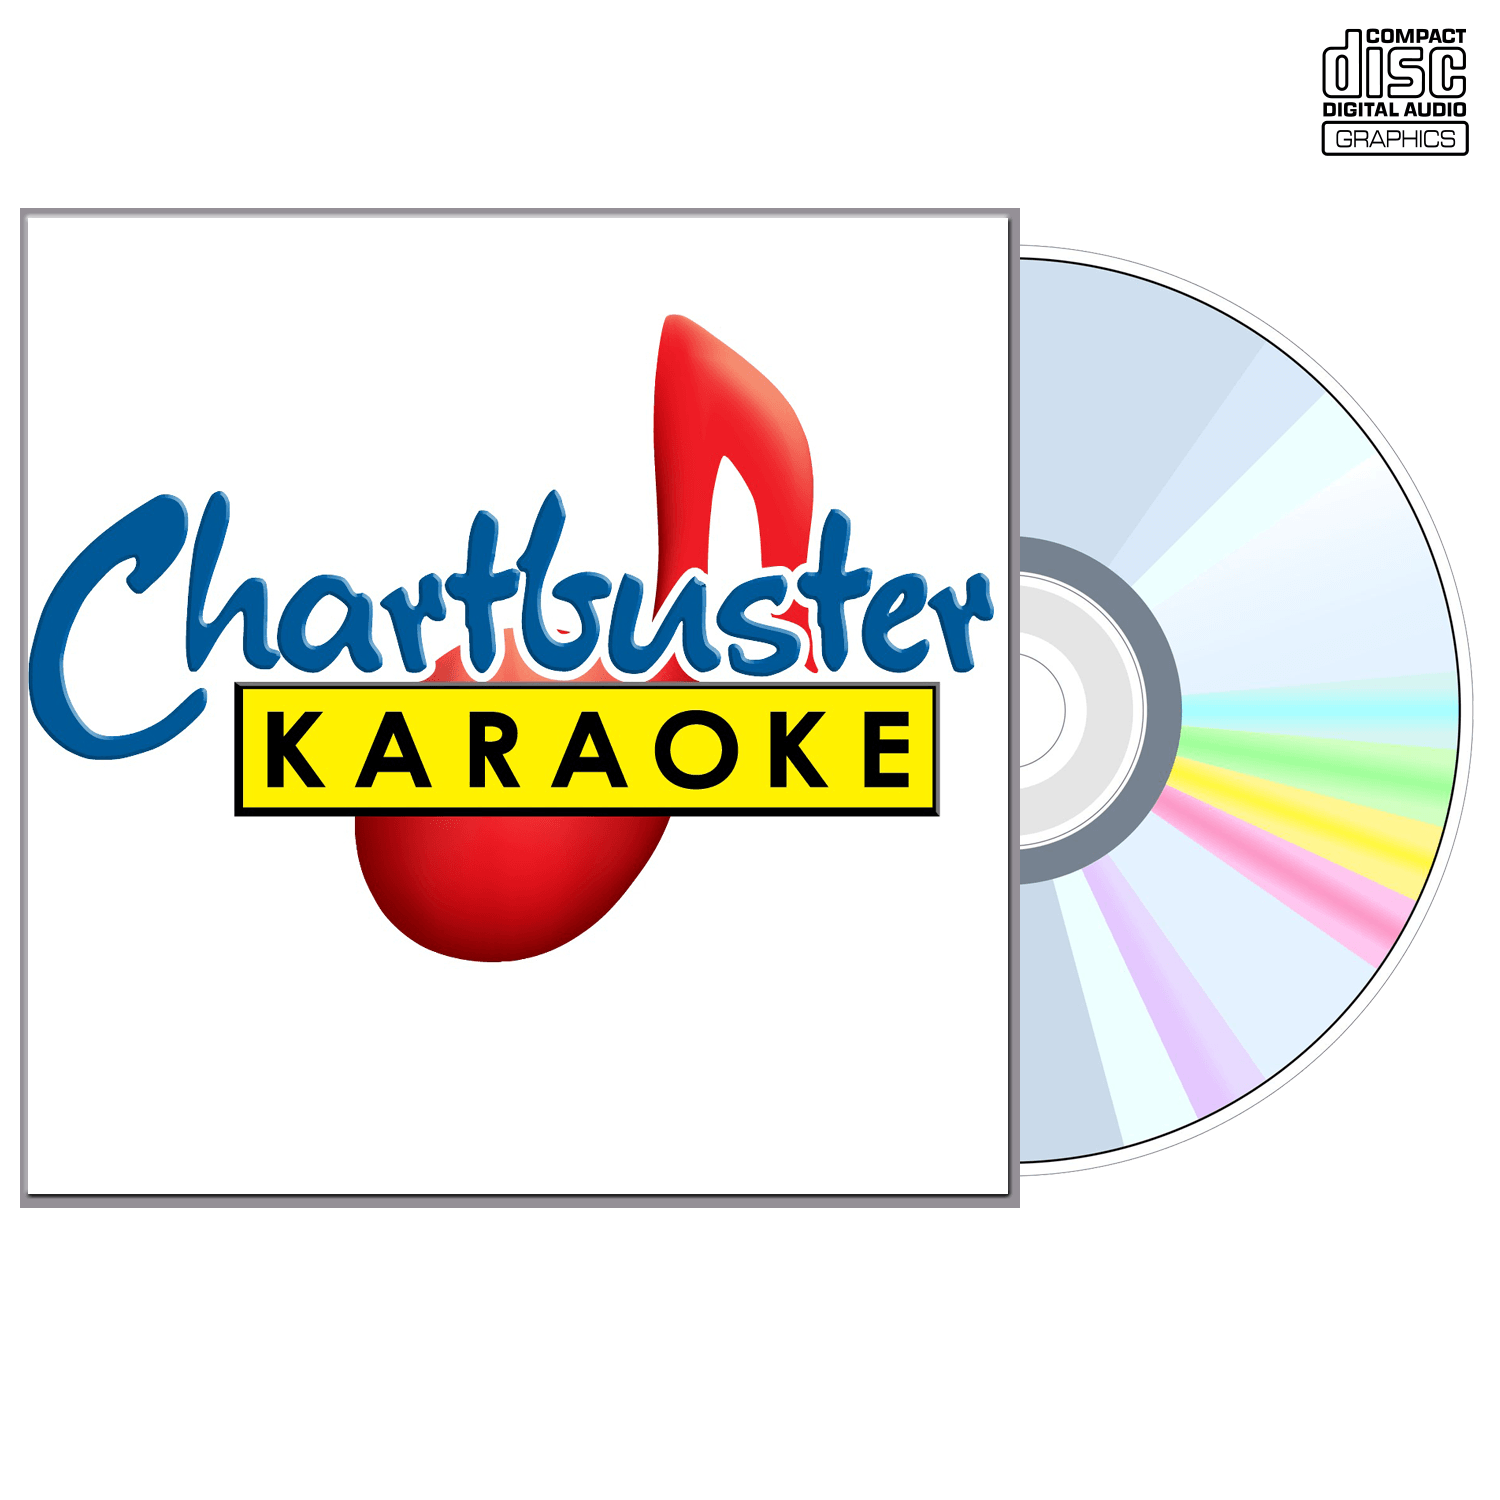 Buddy Holly - CD+G - Chartbuster Karaoke - Karaoke Home Entertainment